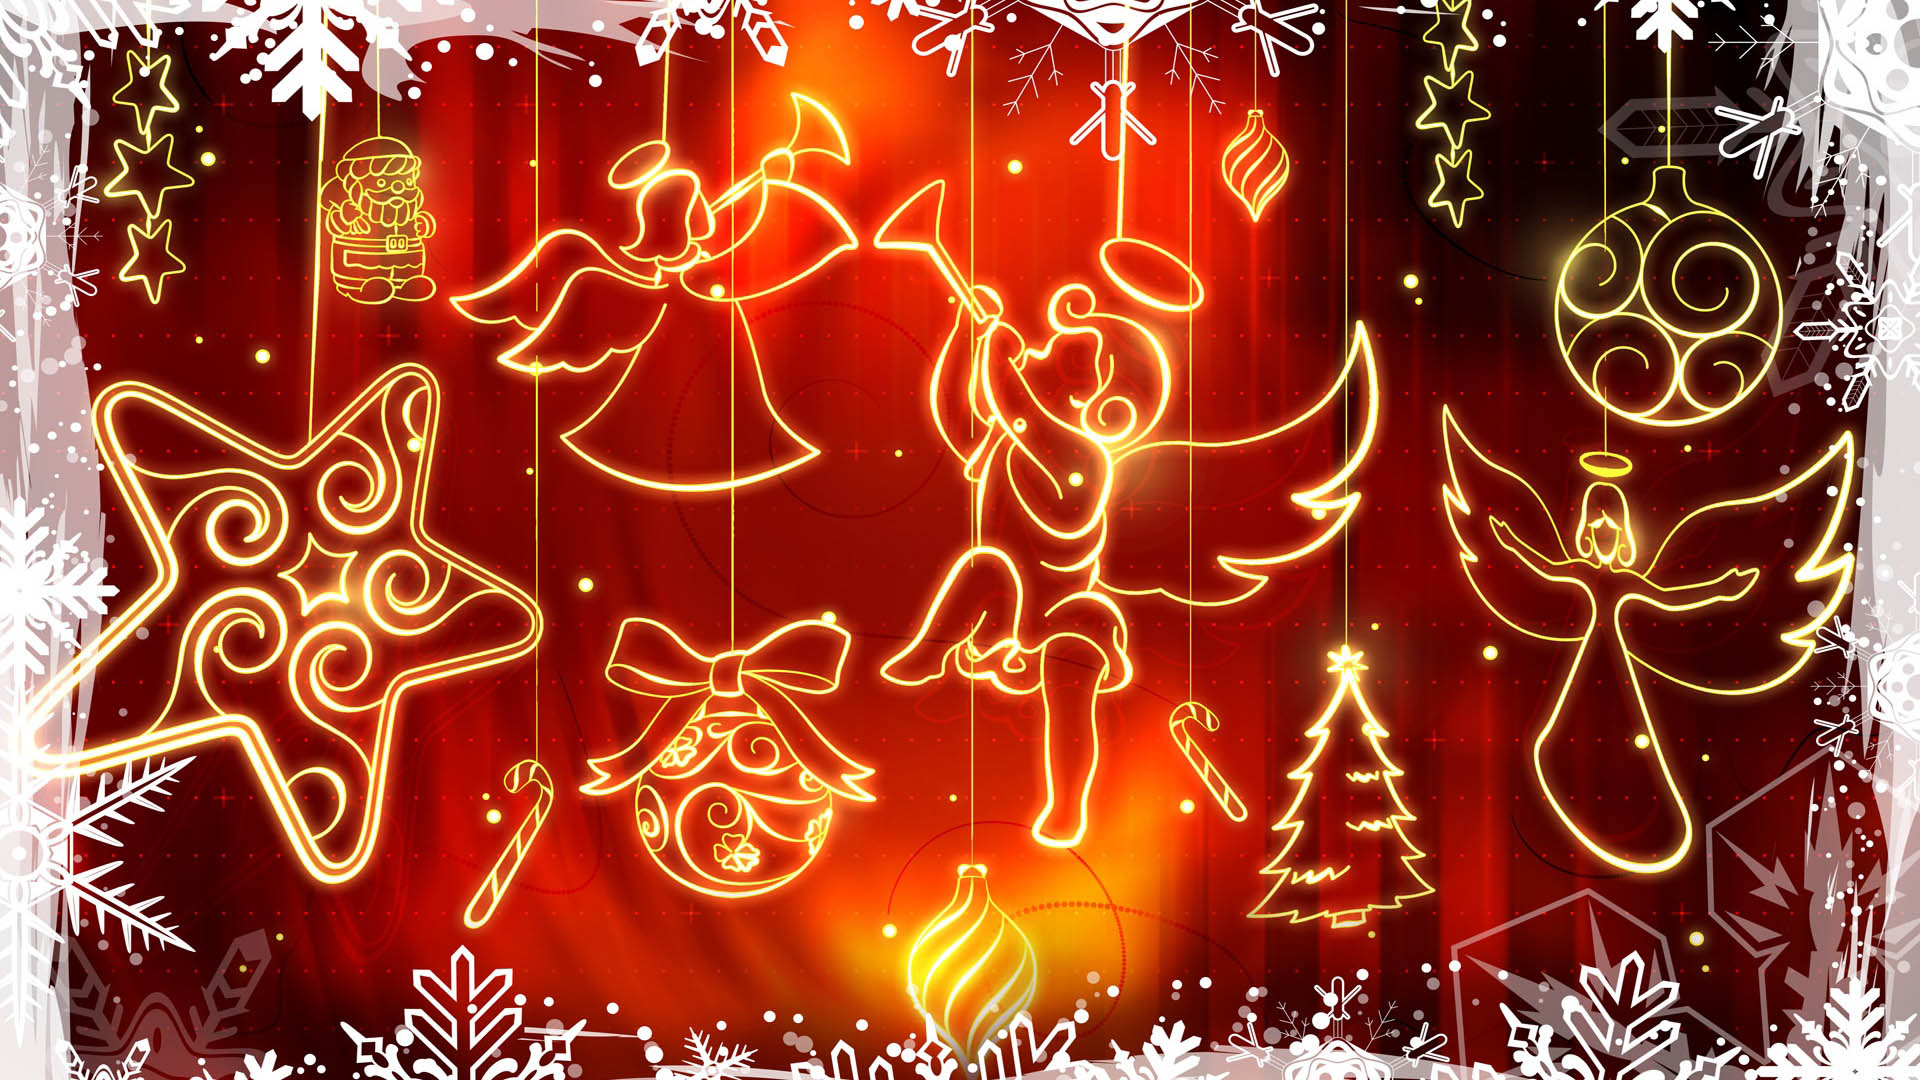 メリークリスマスフルhd壁紙,赤,クリスマスの飾り,テキスト,クリスマスオーナメント,f te